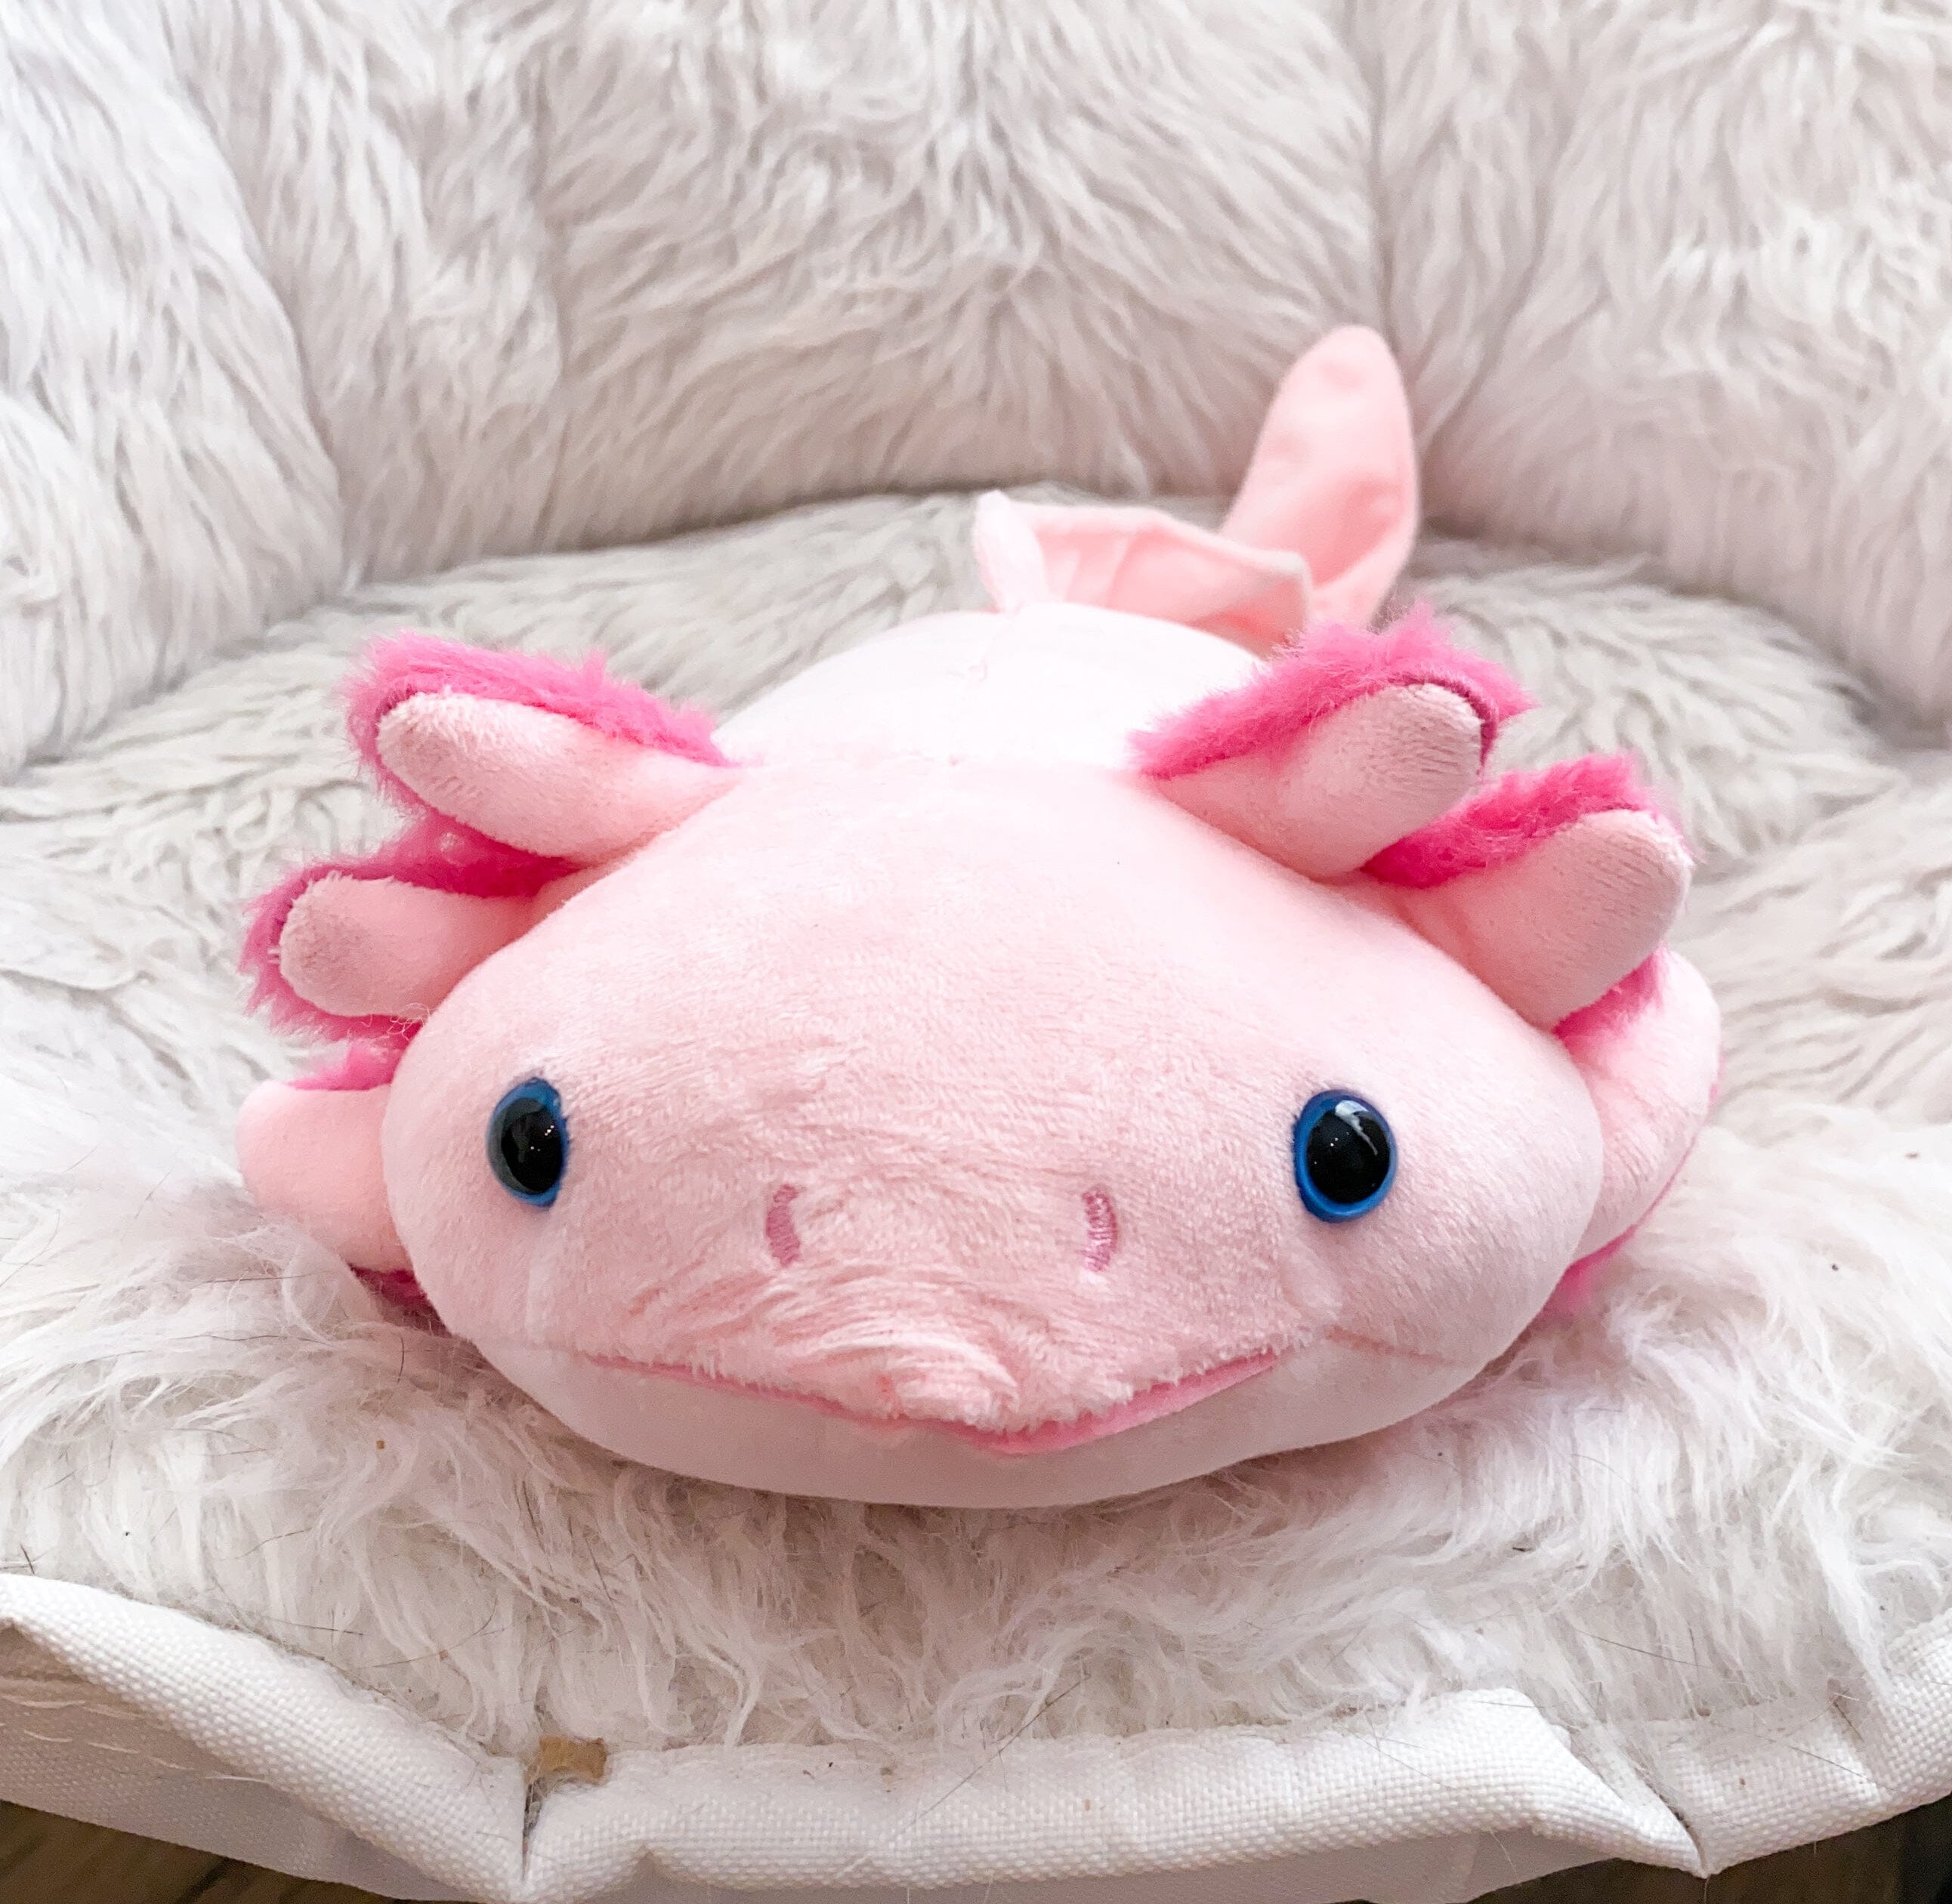 Axolotl Plush The Autistic Innovator 